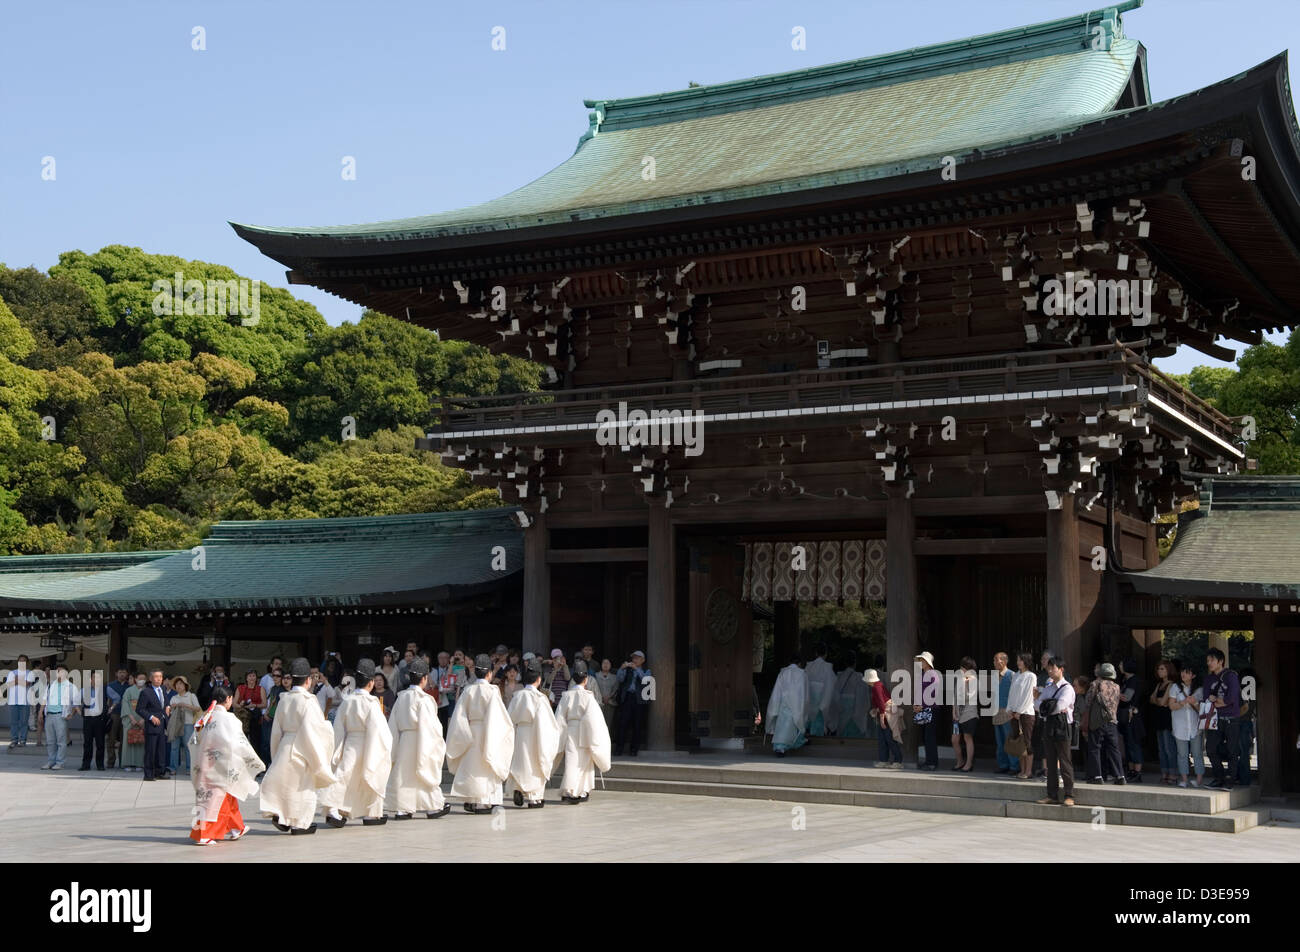 Les prêtres Shinto mars dans une procession à travers la porte principale de Meiji Jingu durant une cérémonie religieuse à Tokyo, Japon. Banque D'Images